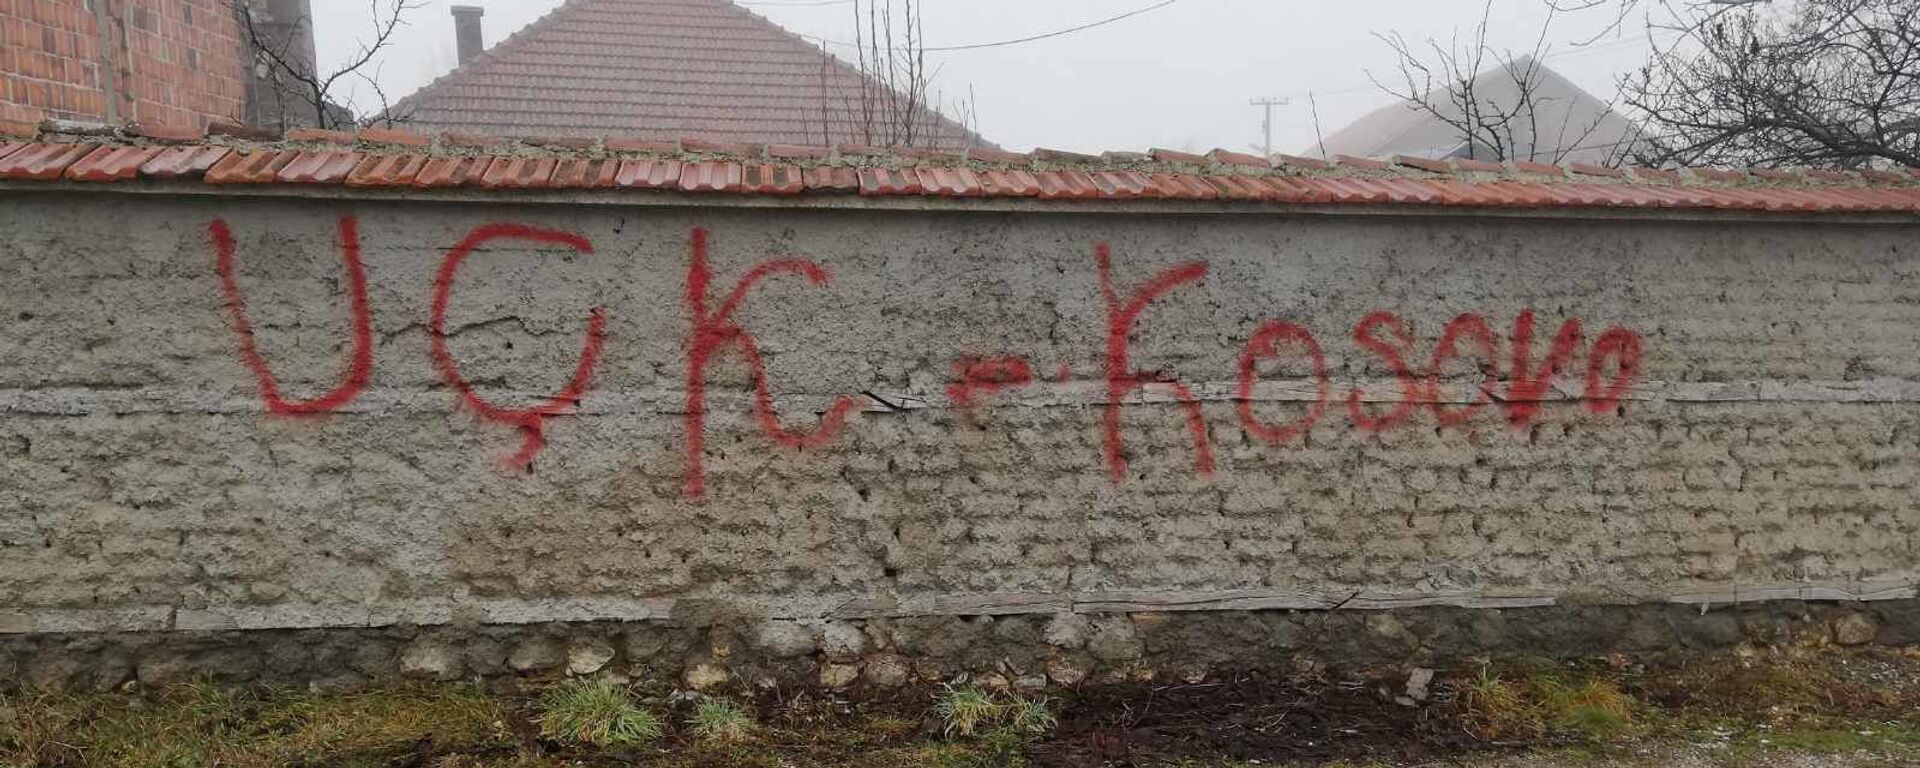 Na zidu porodične kuće familije Krstović u Goraždevcu grafit s porukom „OVK – Kosovo“ - Sputnik Srbija, 1920, 21.07.2021